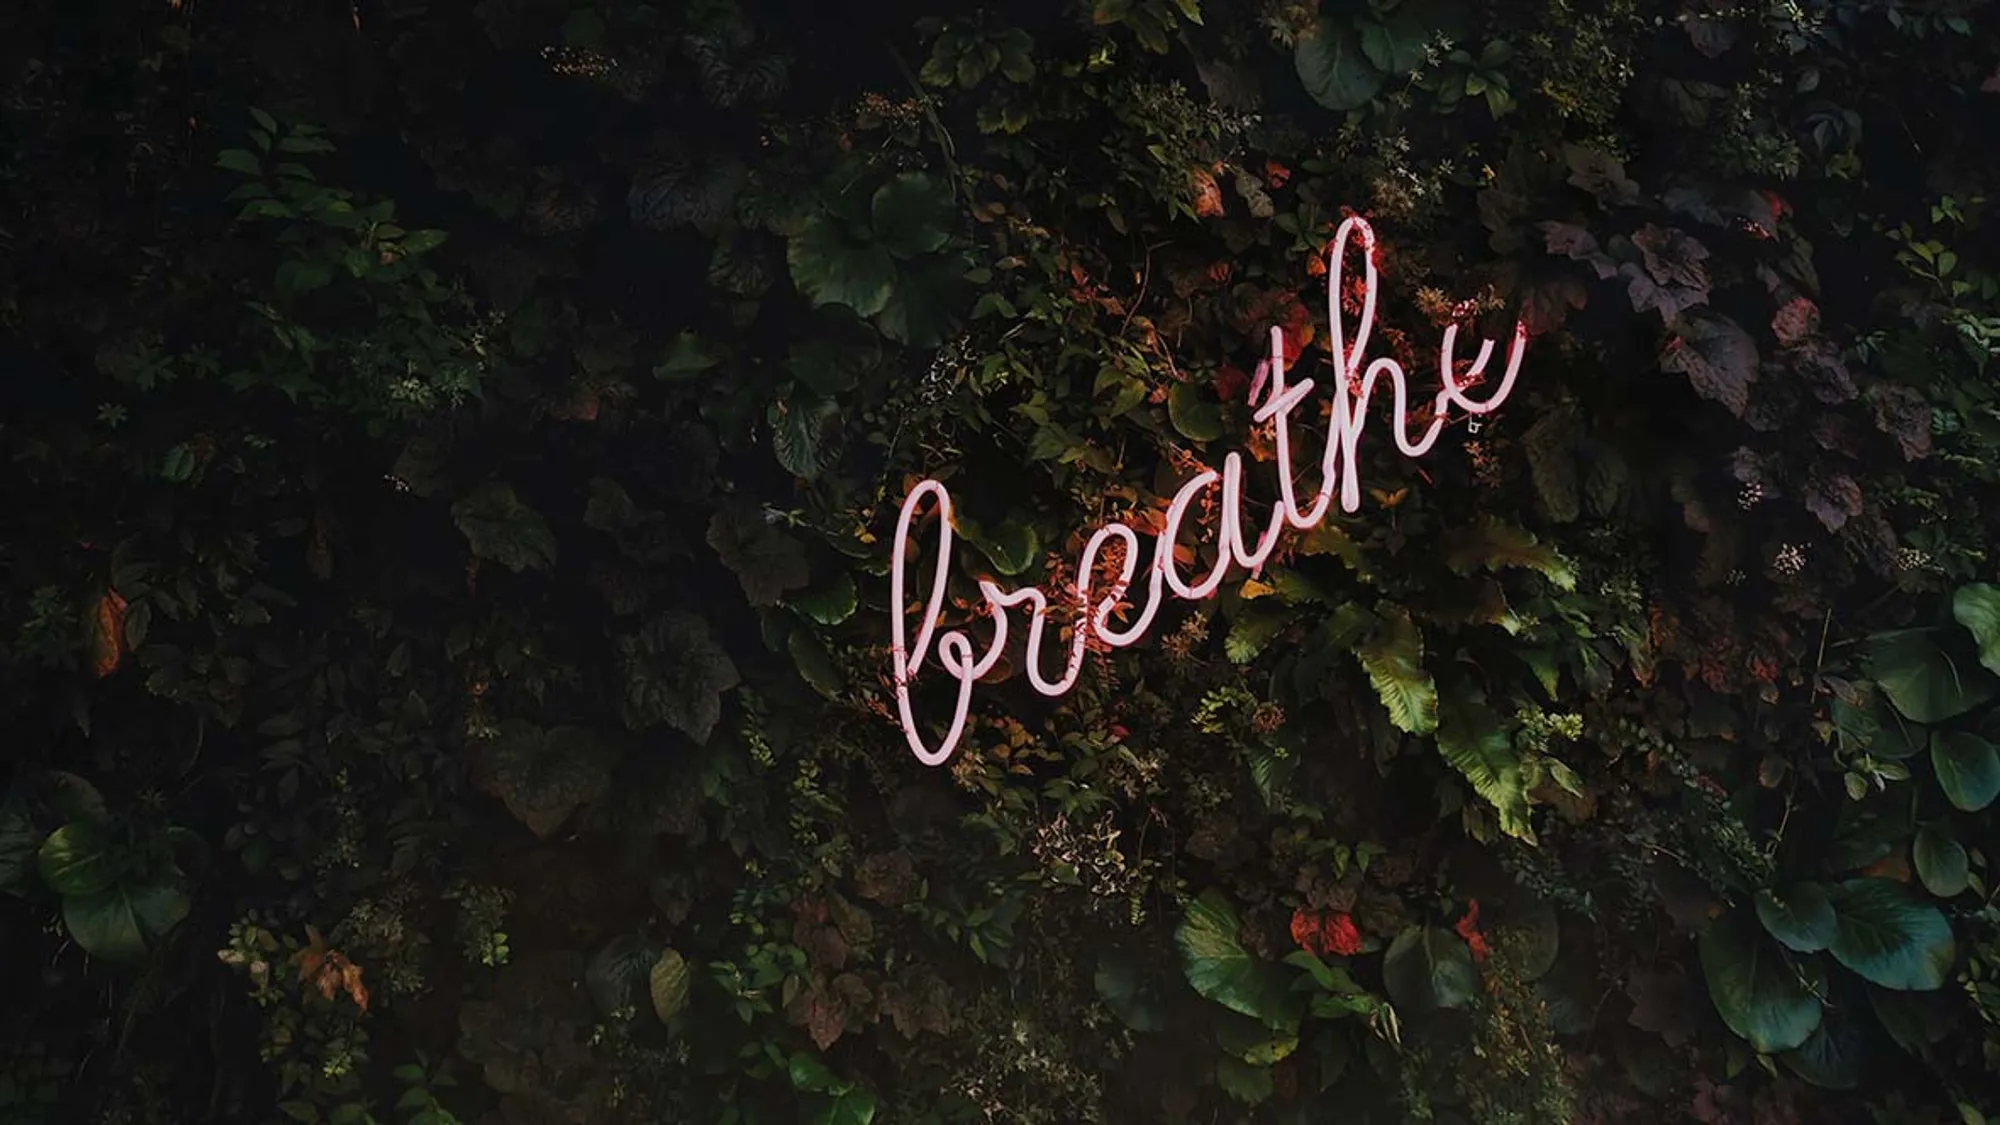 Atemtechniken: Bild mit breathe schriftzug